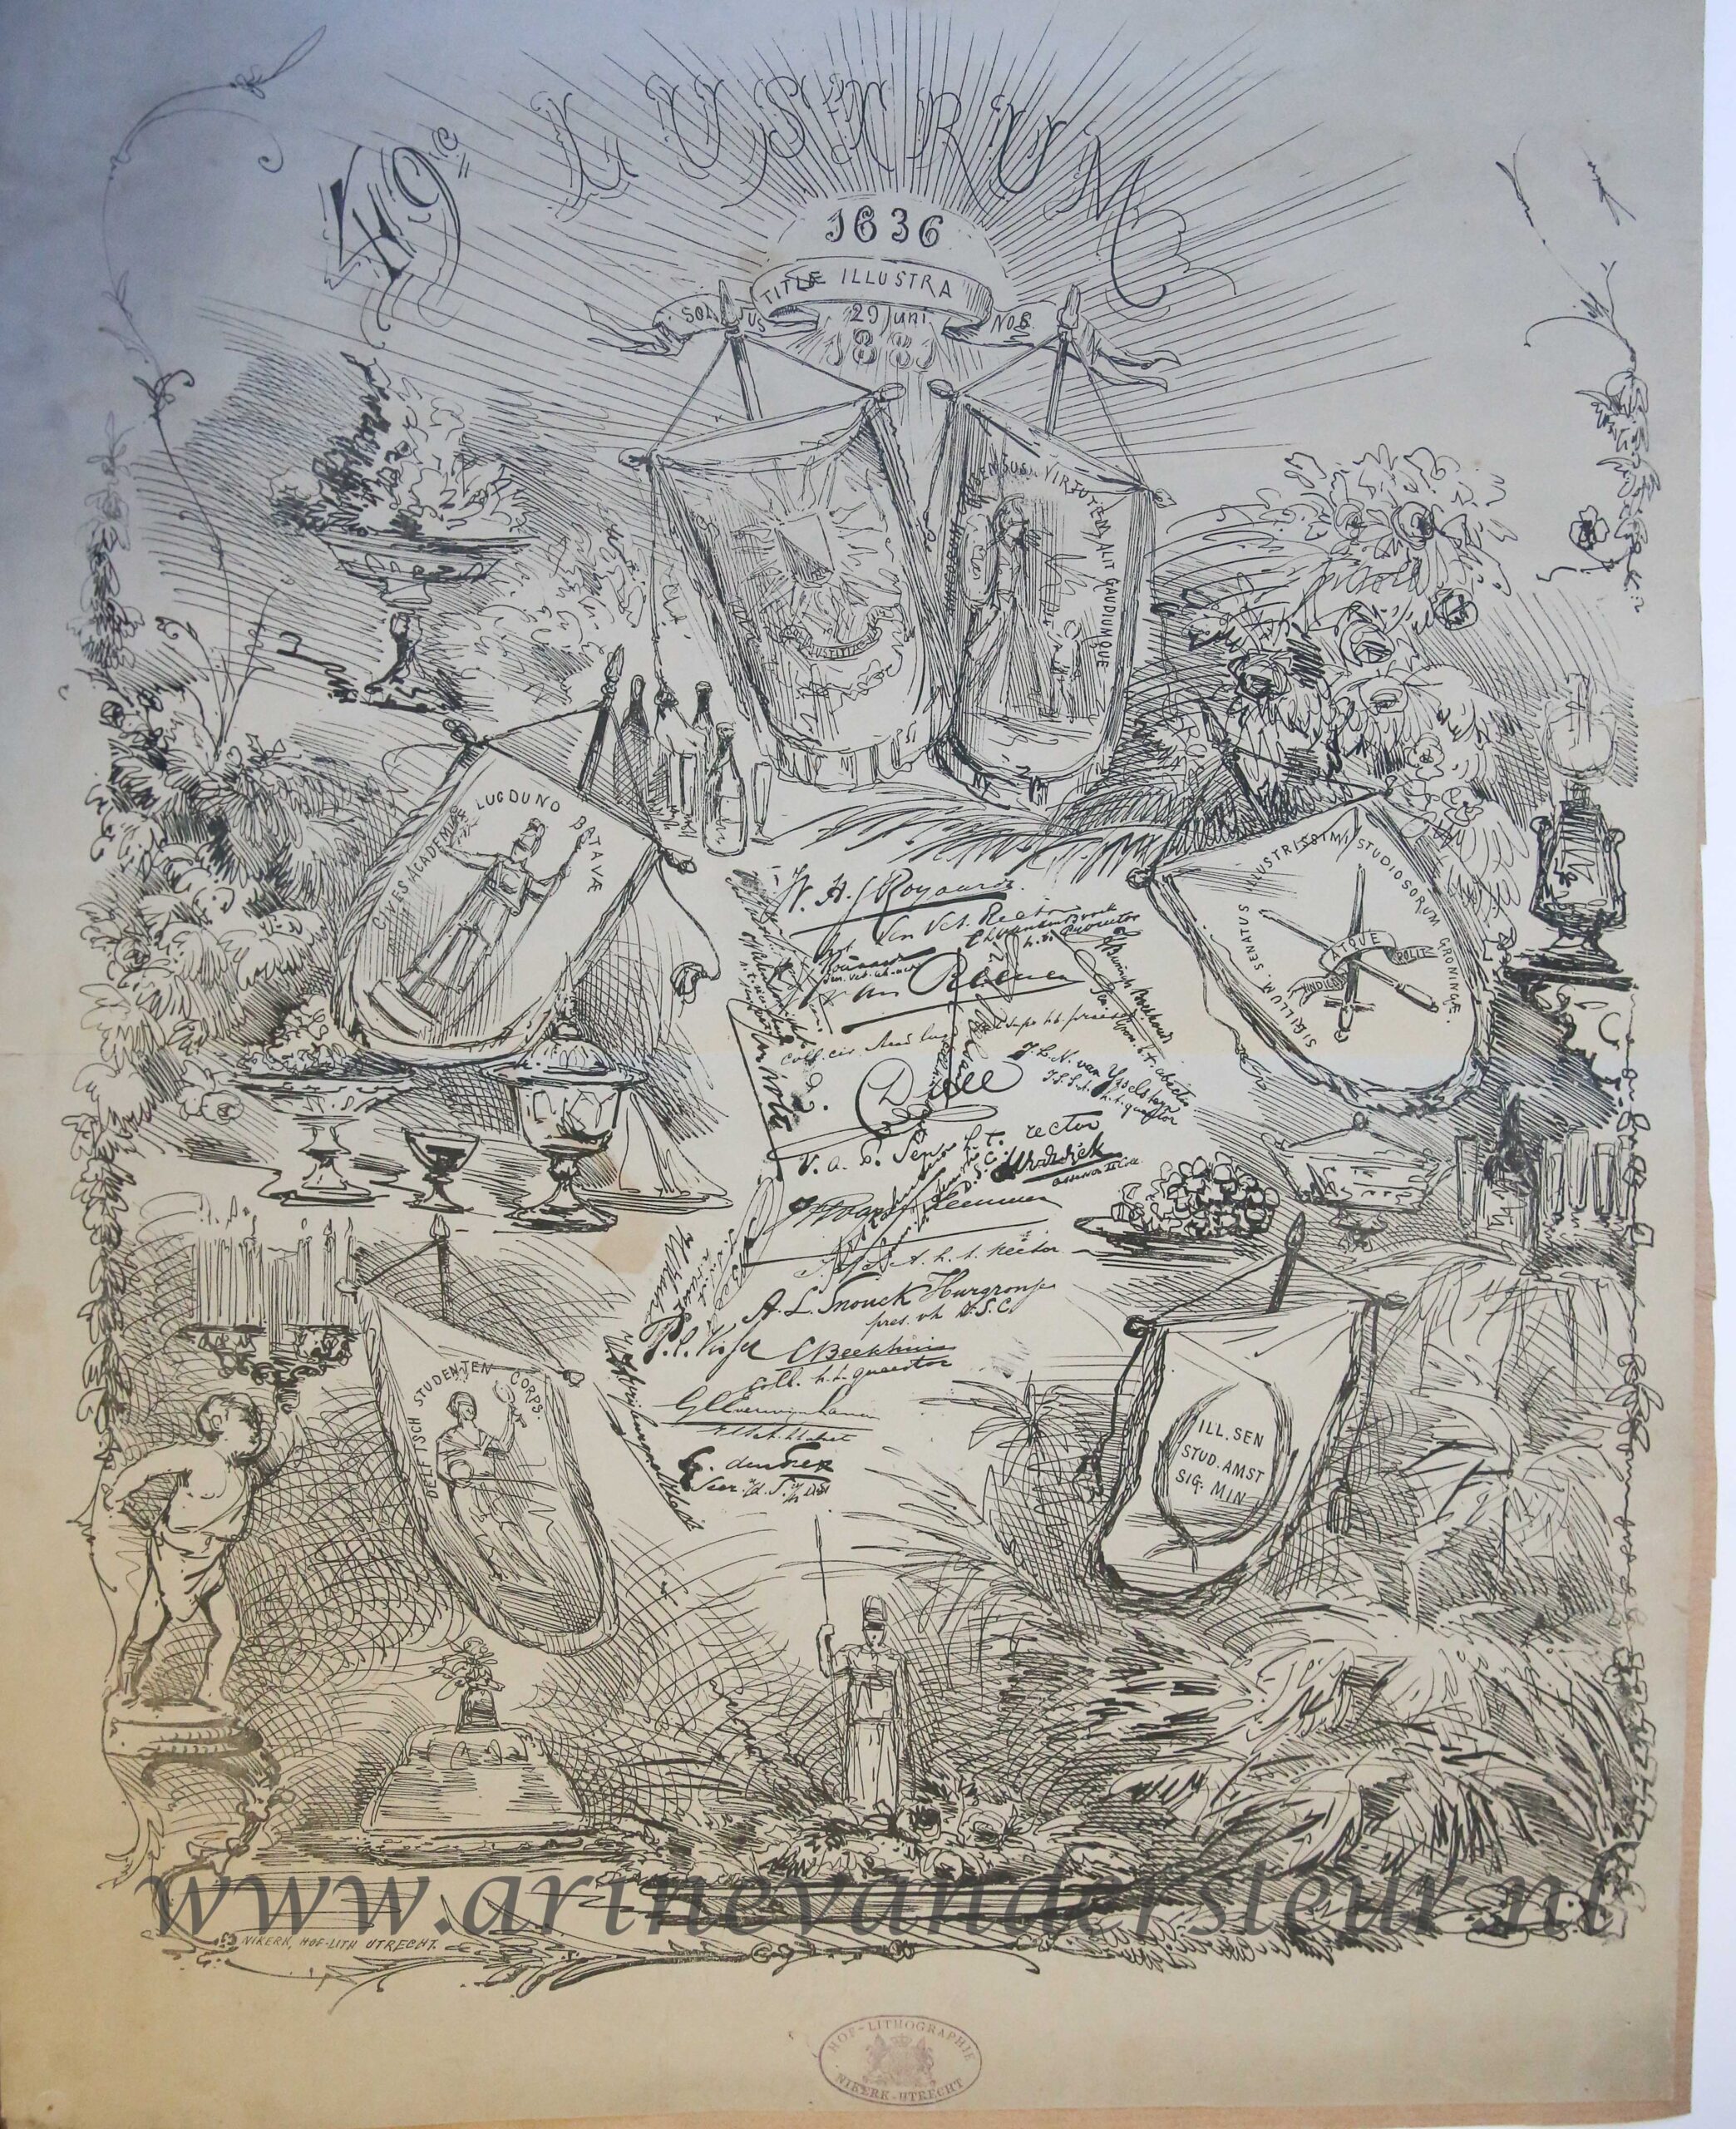  - STUDENTEN, UTRECHT--- Gedachtenisprent '49e lustrum 29-6-1636-1881', litho Nikerk, 60x50 cm., met afbeeldingen van vaandels van andere studencorpora en handtekeningen. Gedrukt.